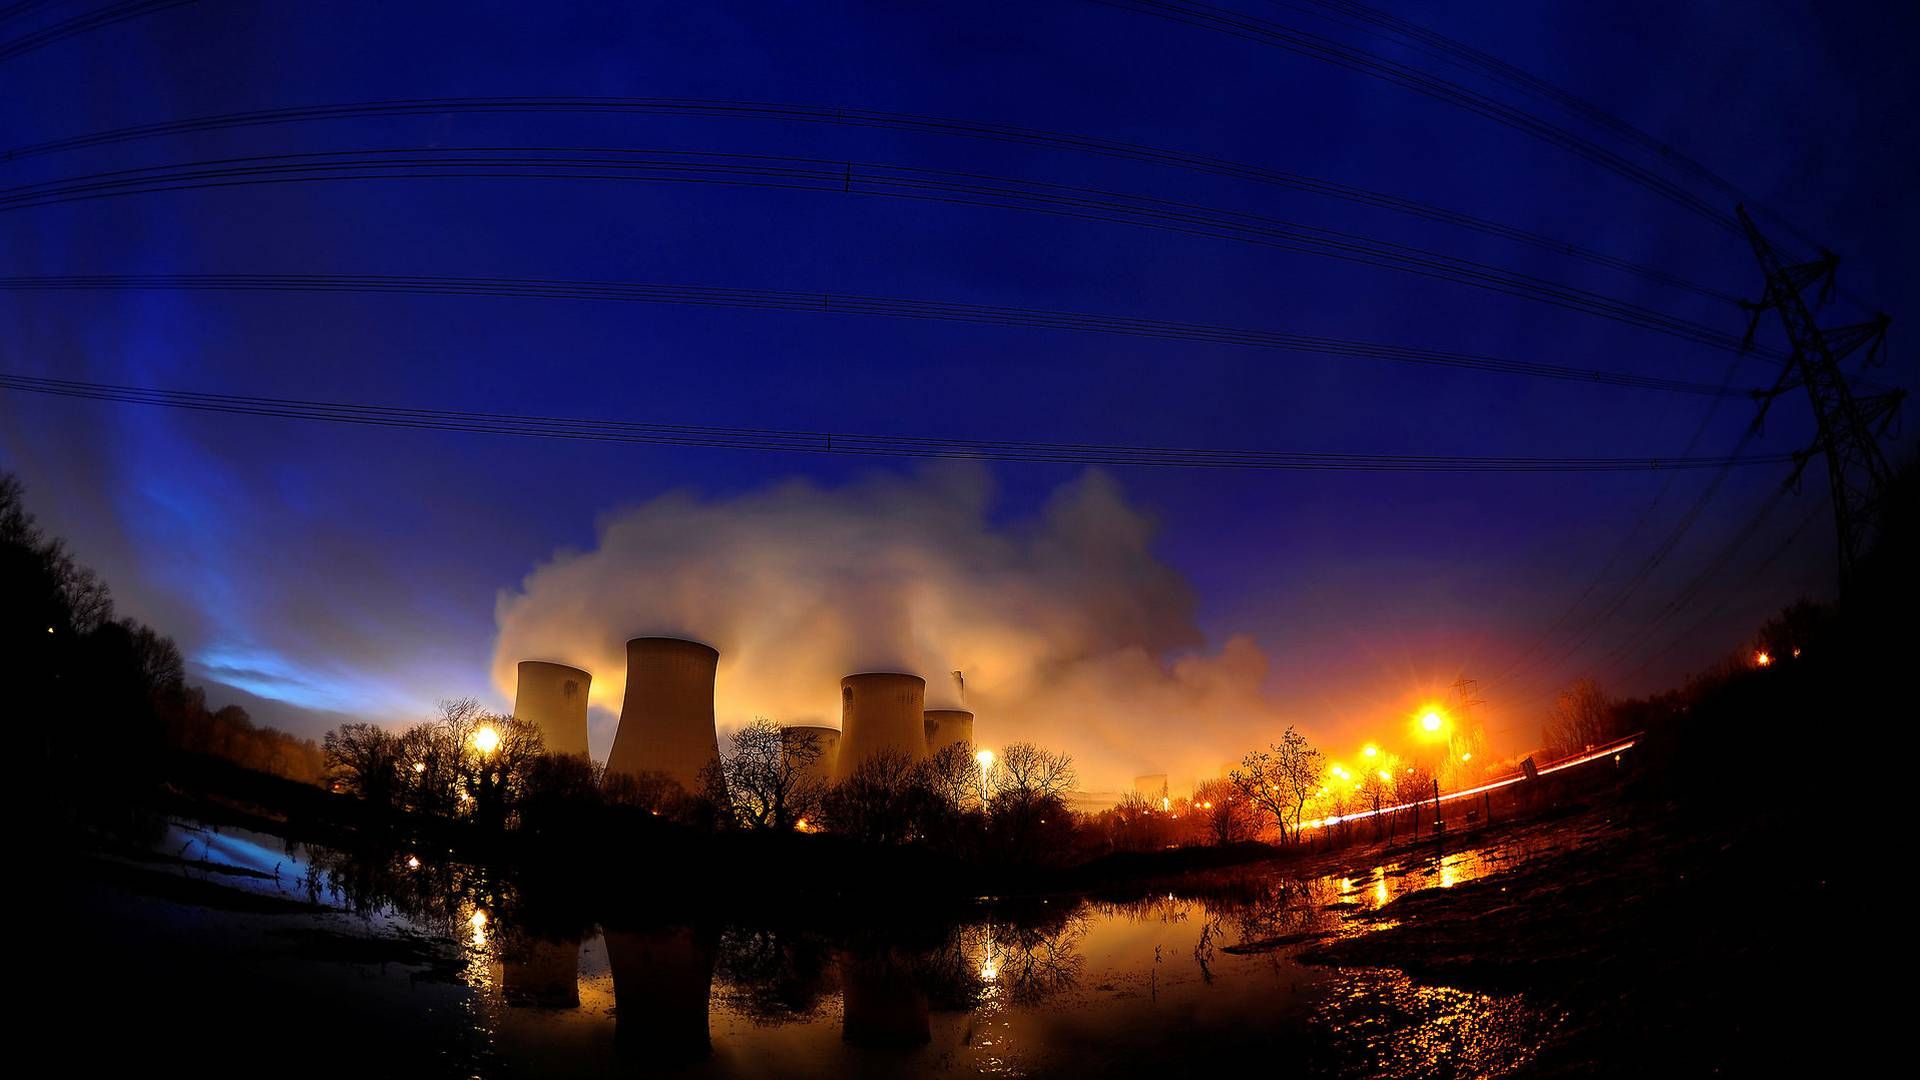 Det er effektivt at producere strøm på baggrund af kul, men det er hævet over enhver tvivl, at det er skidt for miljøet. | Foto: Nigel Roddis/Reuters/Ritzau Scanpix